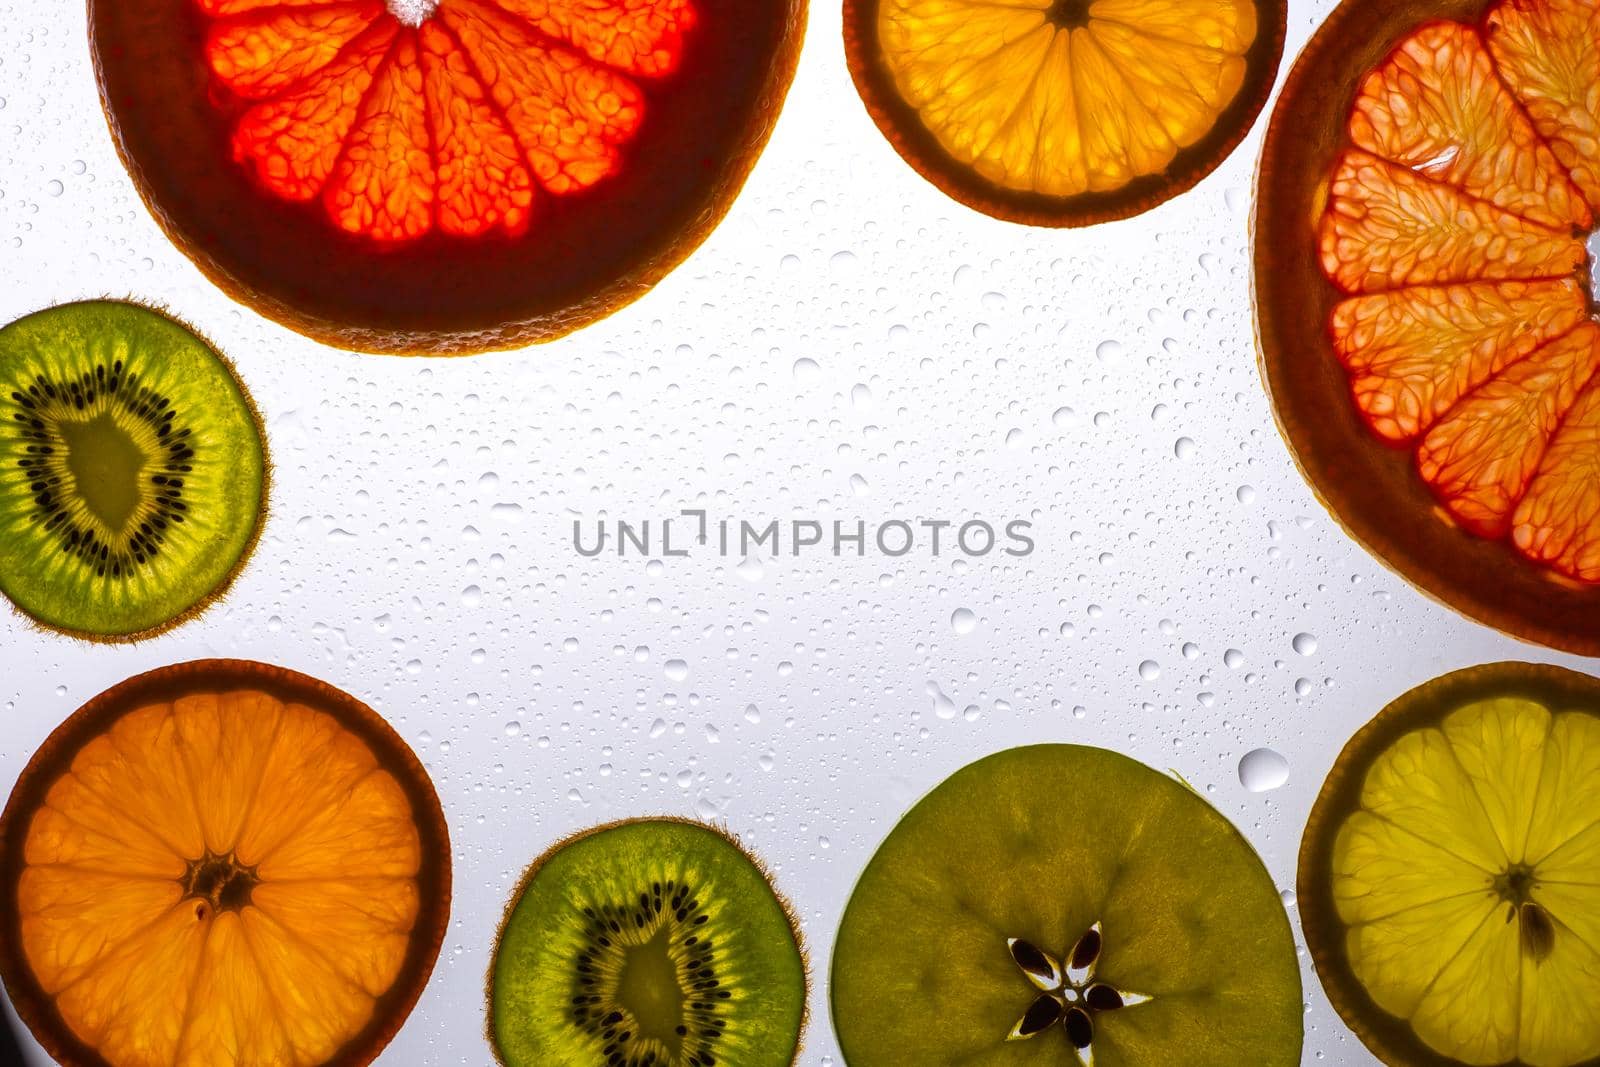 orange grapefruit and kiwi slices on white background